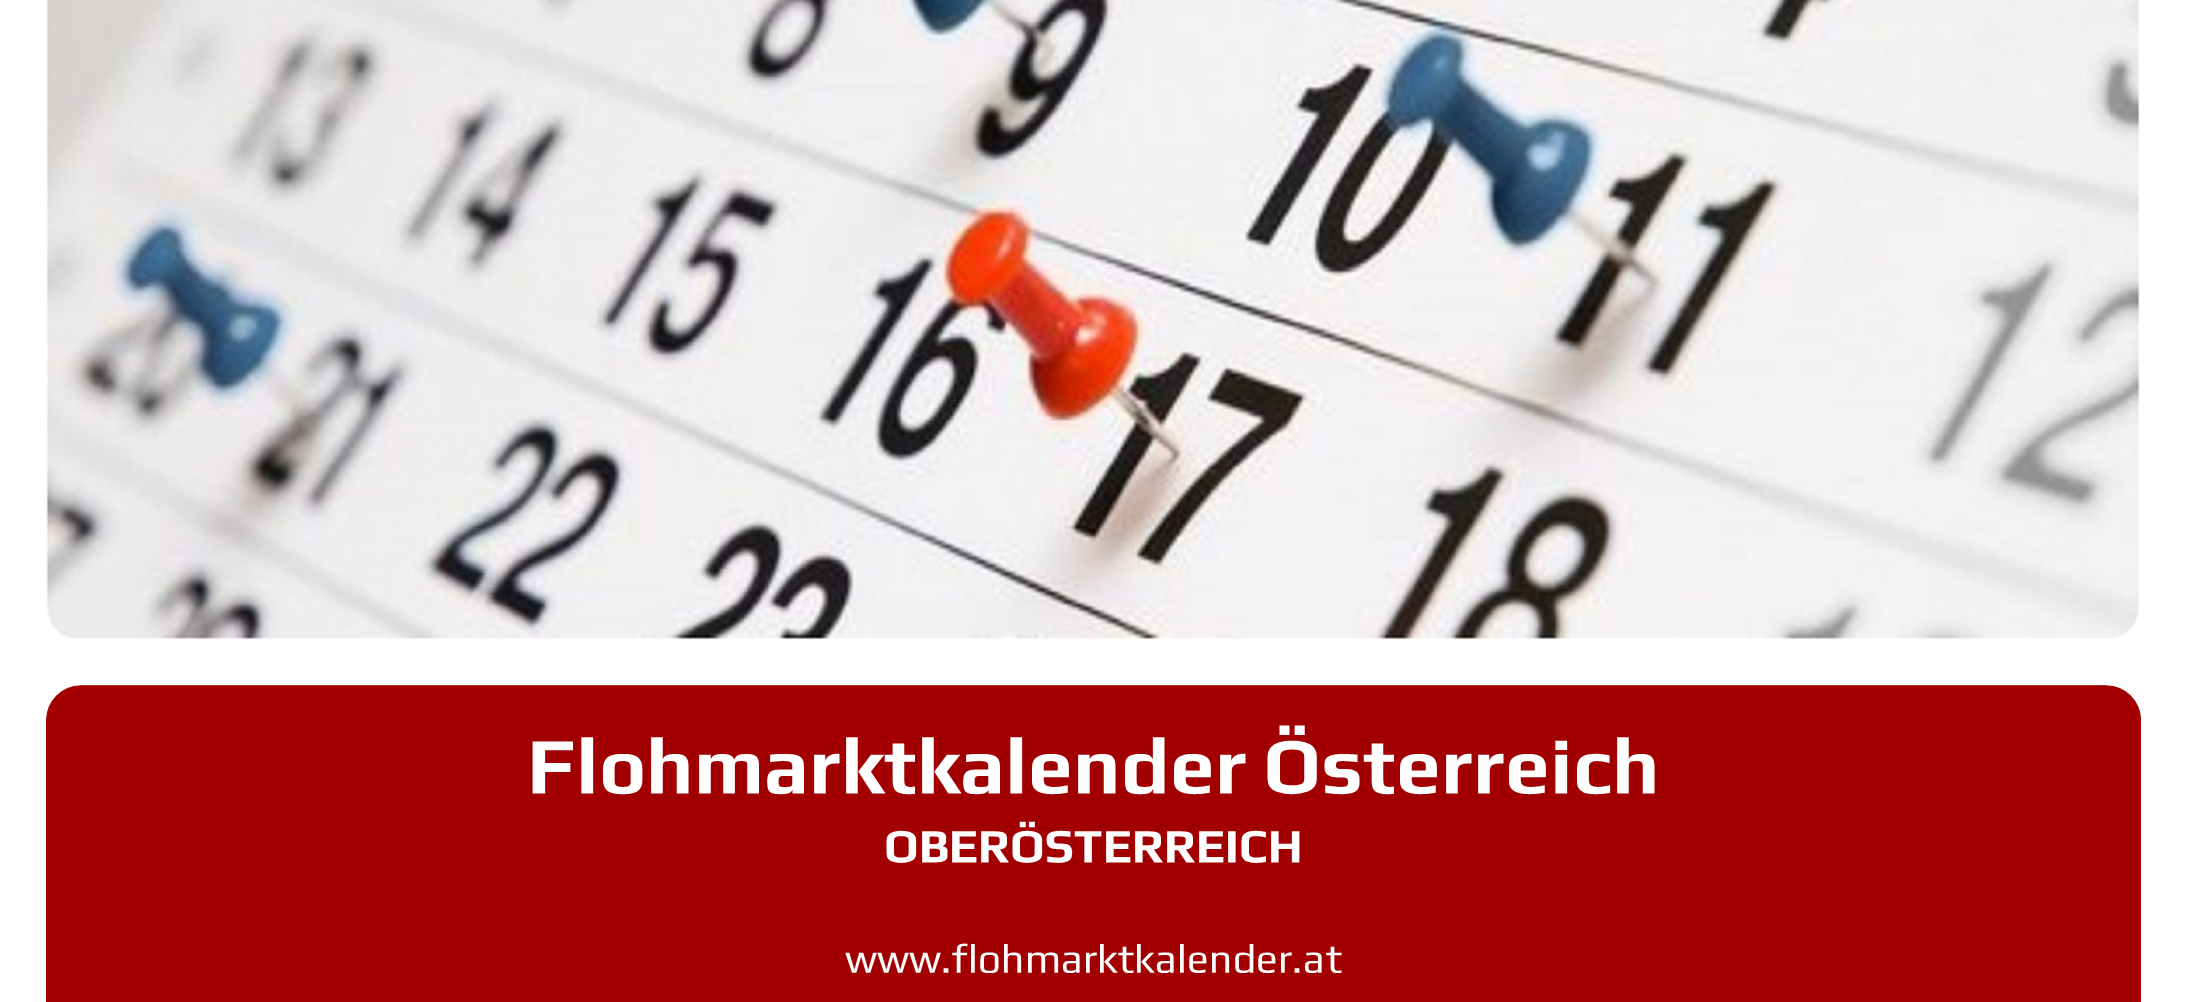 Flohmarktkalender Oberoesterreich 3